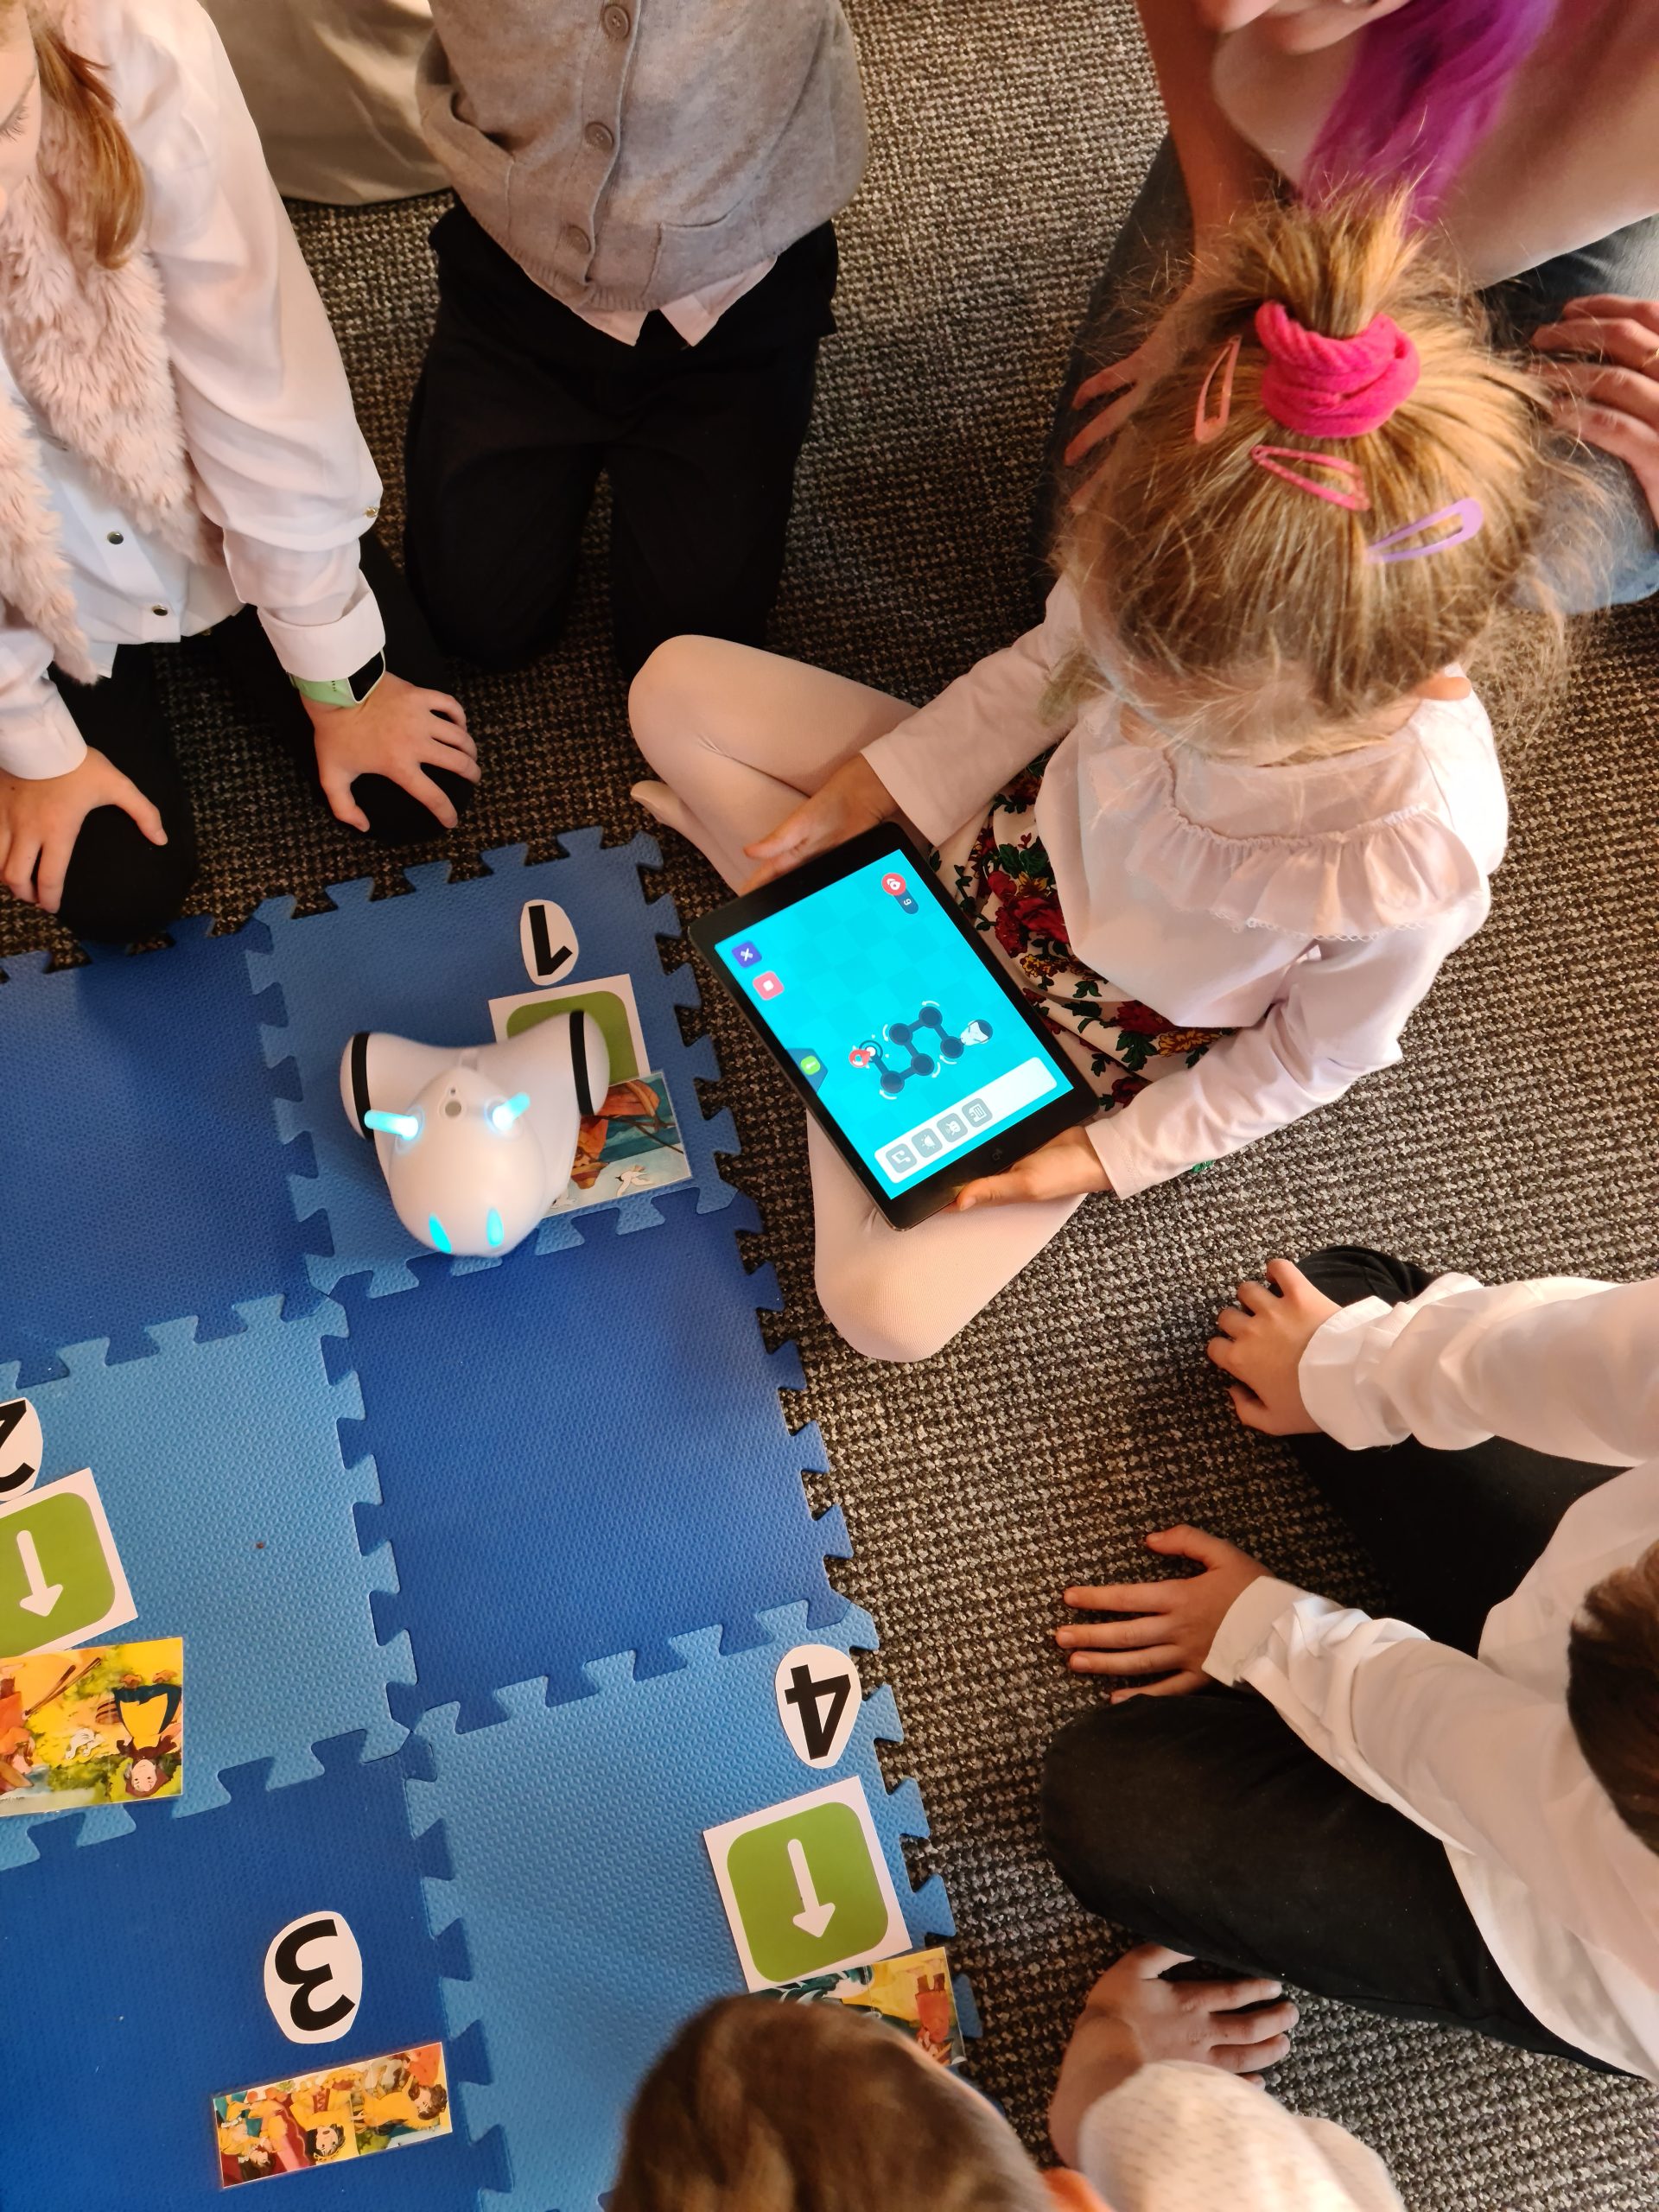 Dzieci siedzące wokół niebieskiej maty na której stoi robot. Jedno z dzieci trzyma w ręku tableta.